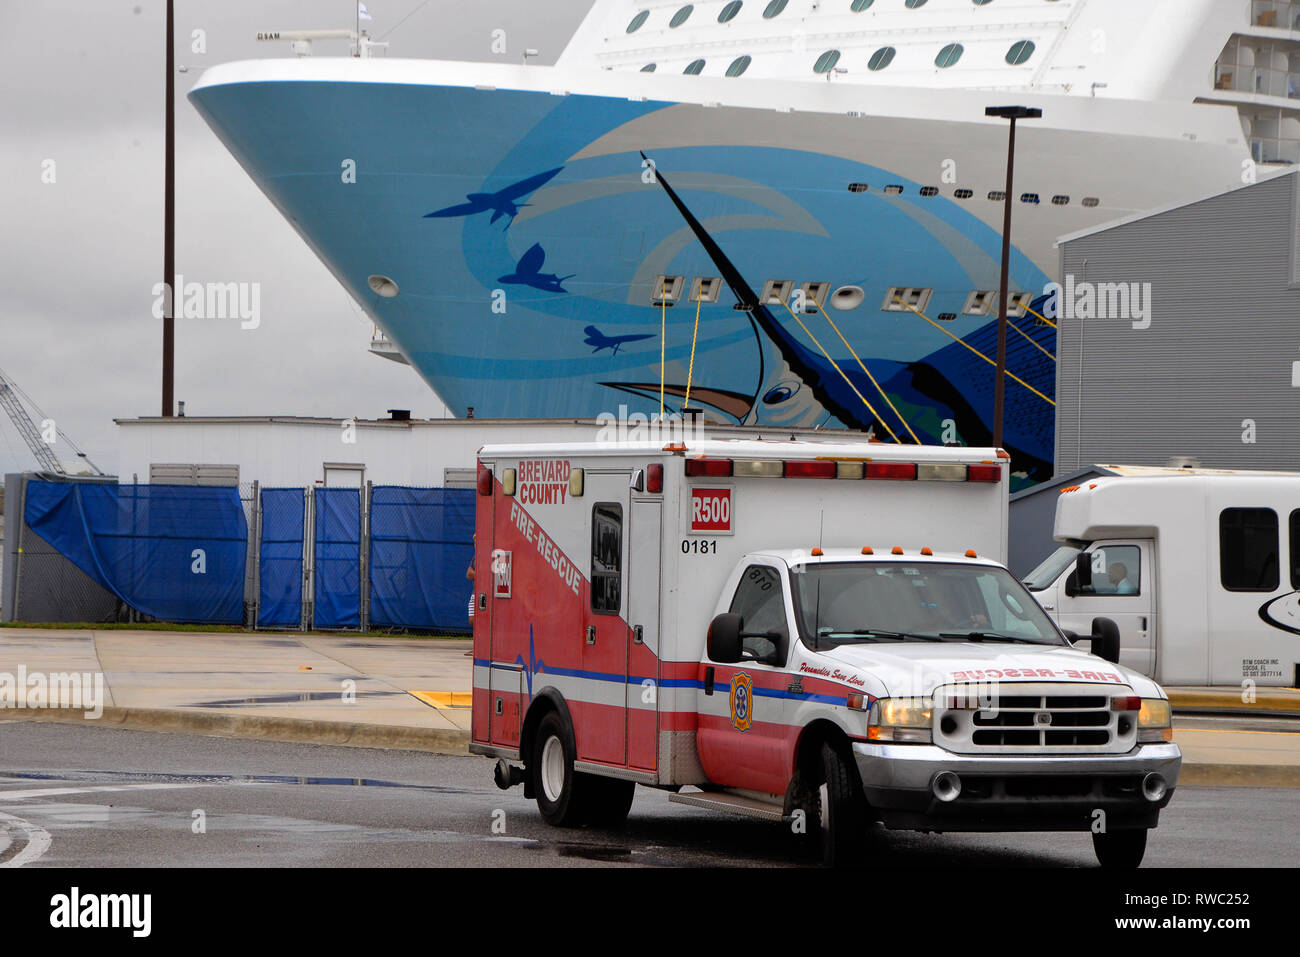 Port Canaveral, Florida, USA. März 5, 2019. Norwegian Cruise Lines "Escape" kommt am Hafen Canaveral nach mehreren Passagieren auf See wurden verletzt. Die "Flucht" auf 115 MPH Winden, nachdem sie aus New York auf dem Weg nach Florida fuhren. Das Schiff war unbeschädigt und Sie nächsten Anlaufhafen fortsetzen. Mehr als 15 Einsatzfahrzeuge von Canaveral Feuerwehr und Brevard County Fire Rescue eingetragen am Kai, wie das Schiff angedockt wurde. Verletzte Passagiere wurden mit lokalen Krankenhäusern für die Behandlung und Auswertung transportiert. Foto Julian Porree/Alamy leben Nachrichten Stockfoto